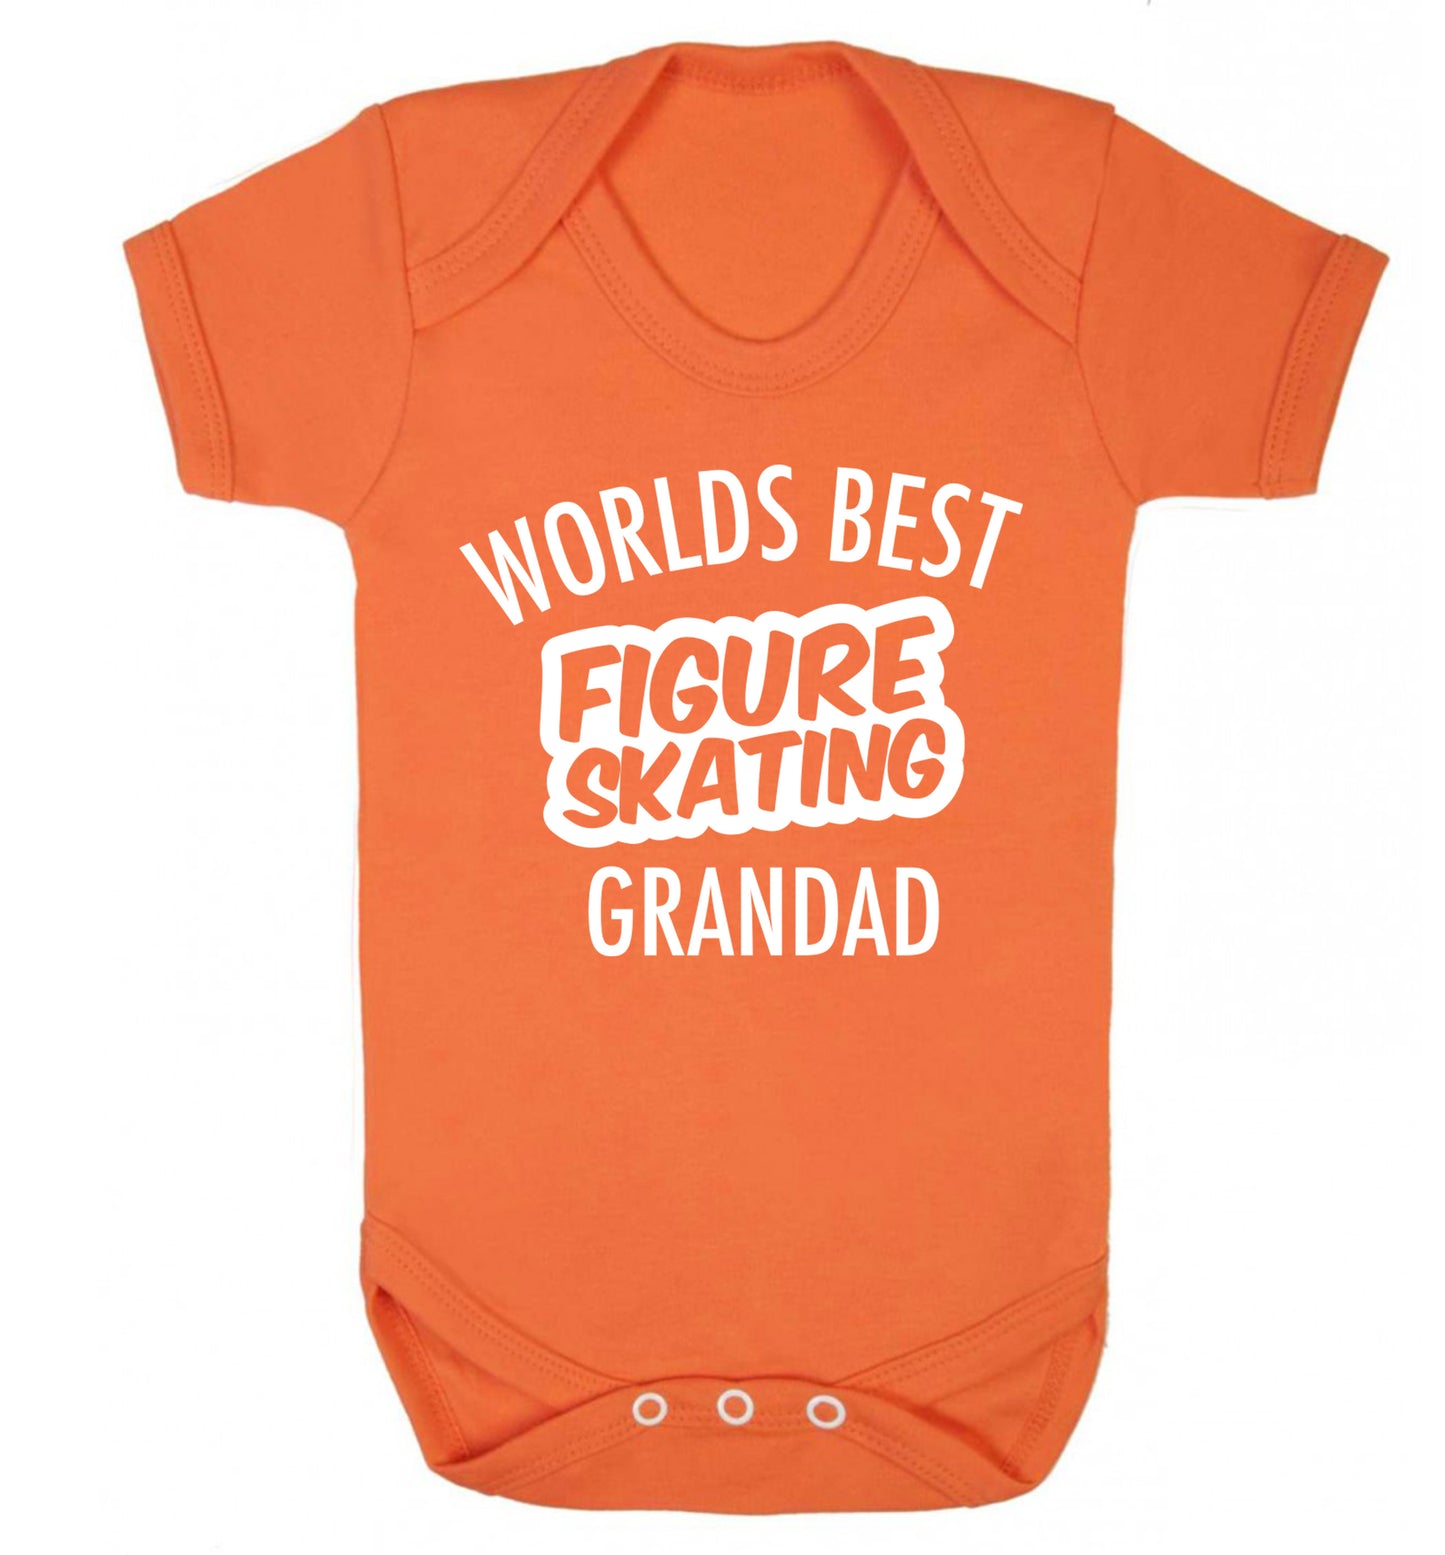 Worlds best figure skating grandad Baby Vest orange 18-24 months